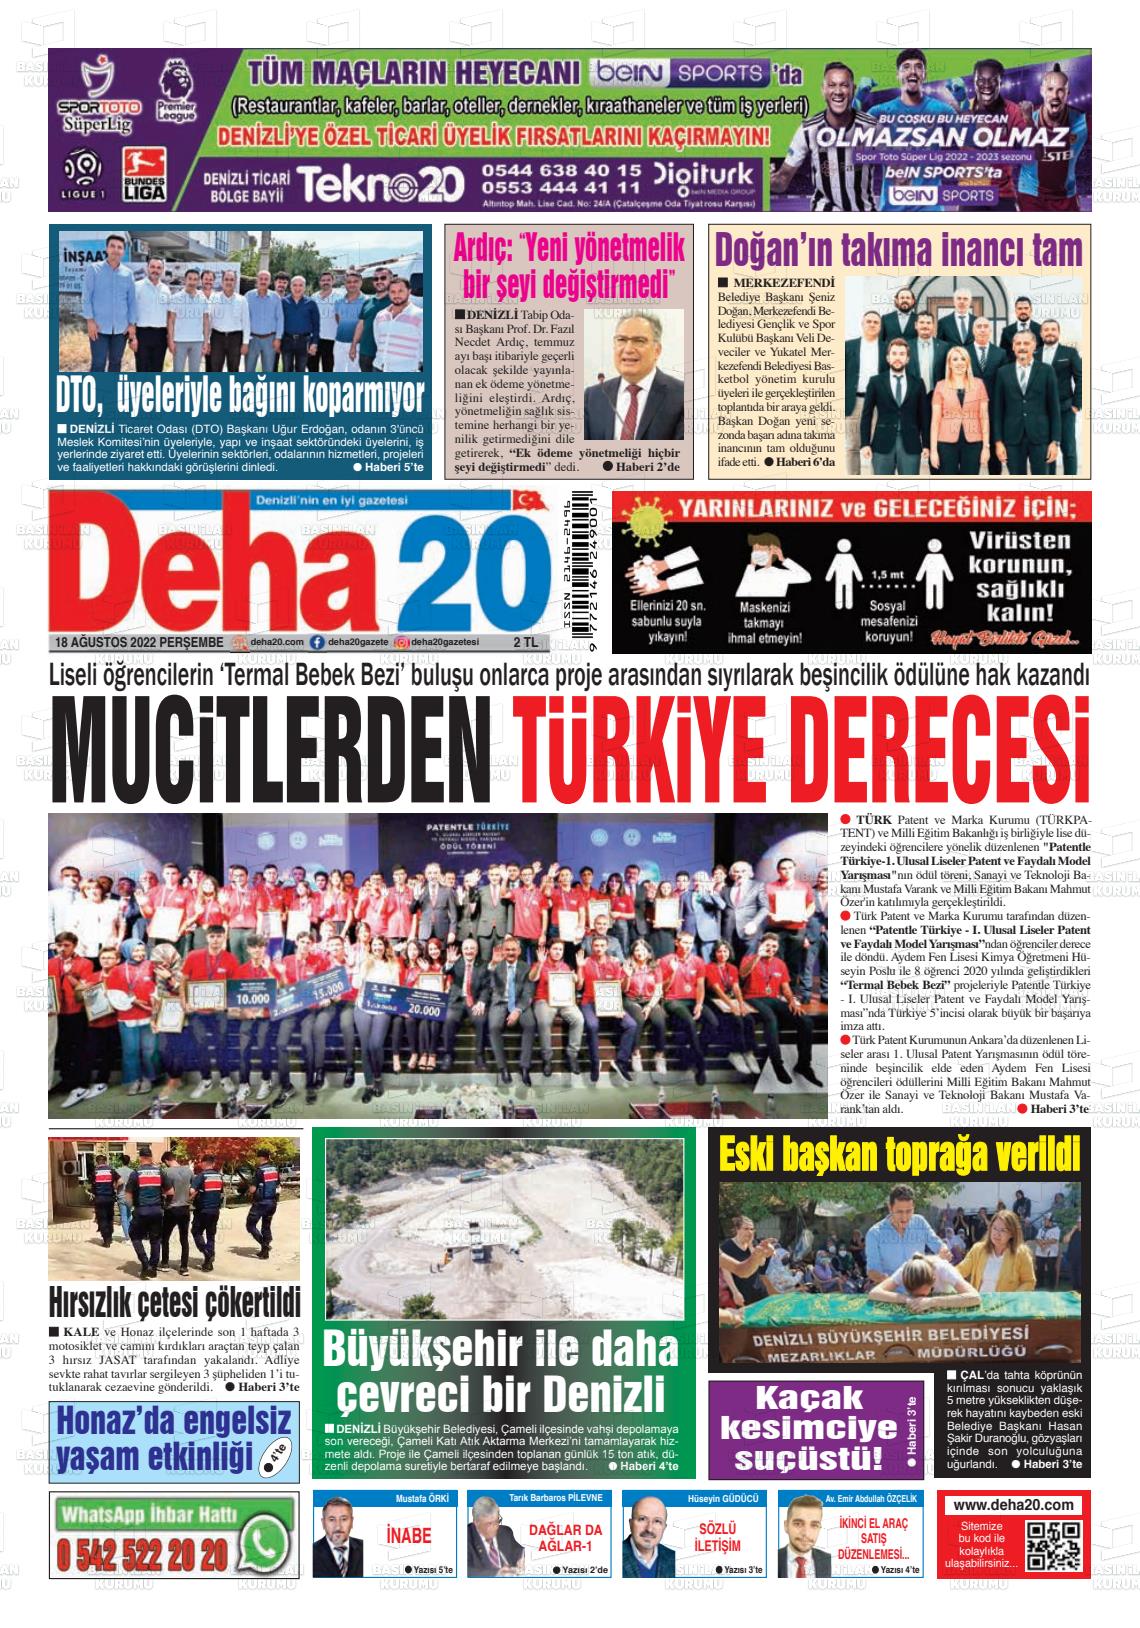 18 Ağustos 2022 Deha 20 Gazete Manşeti